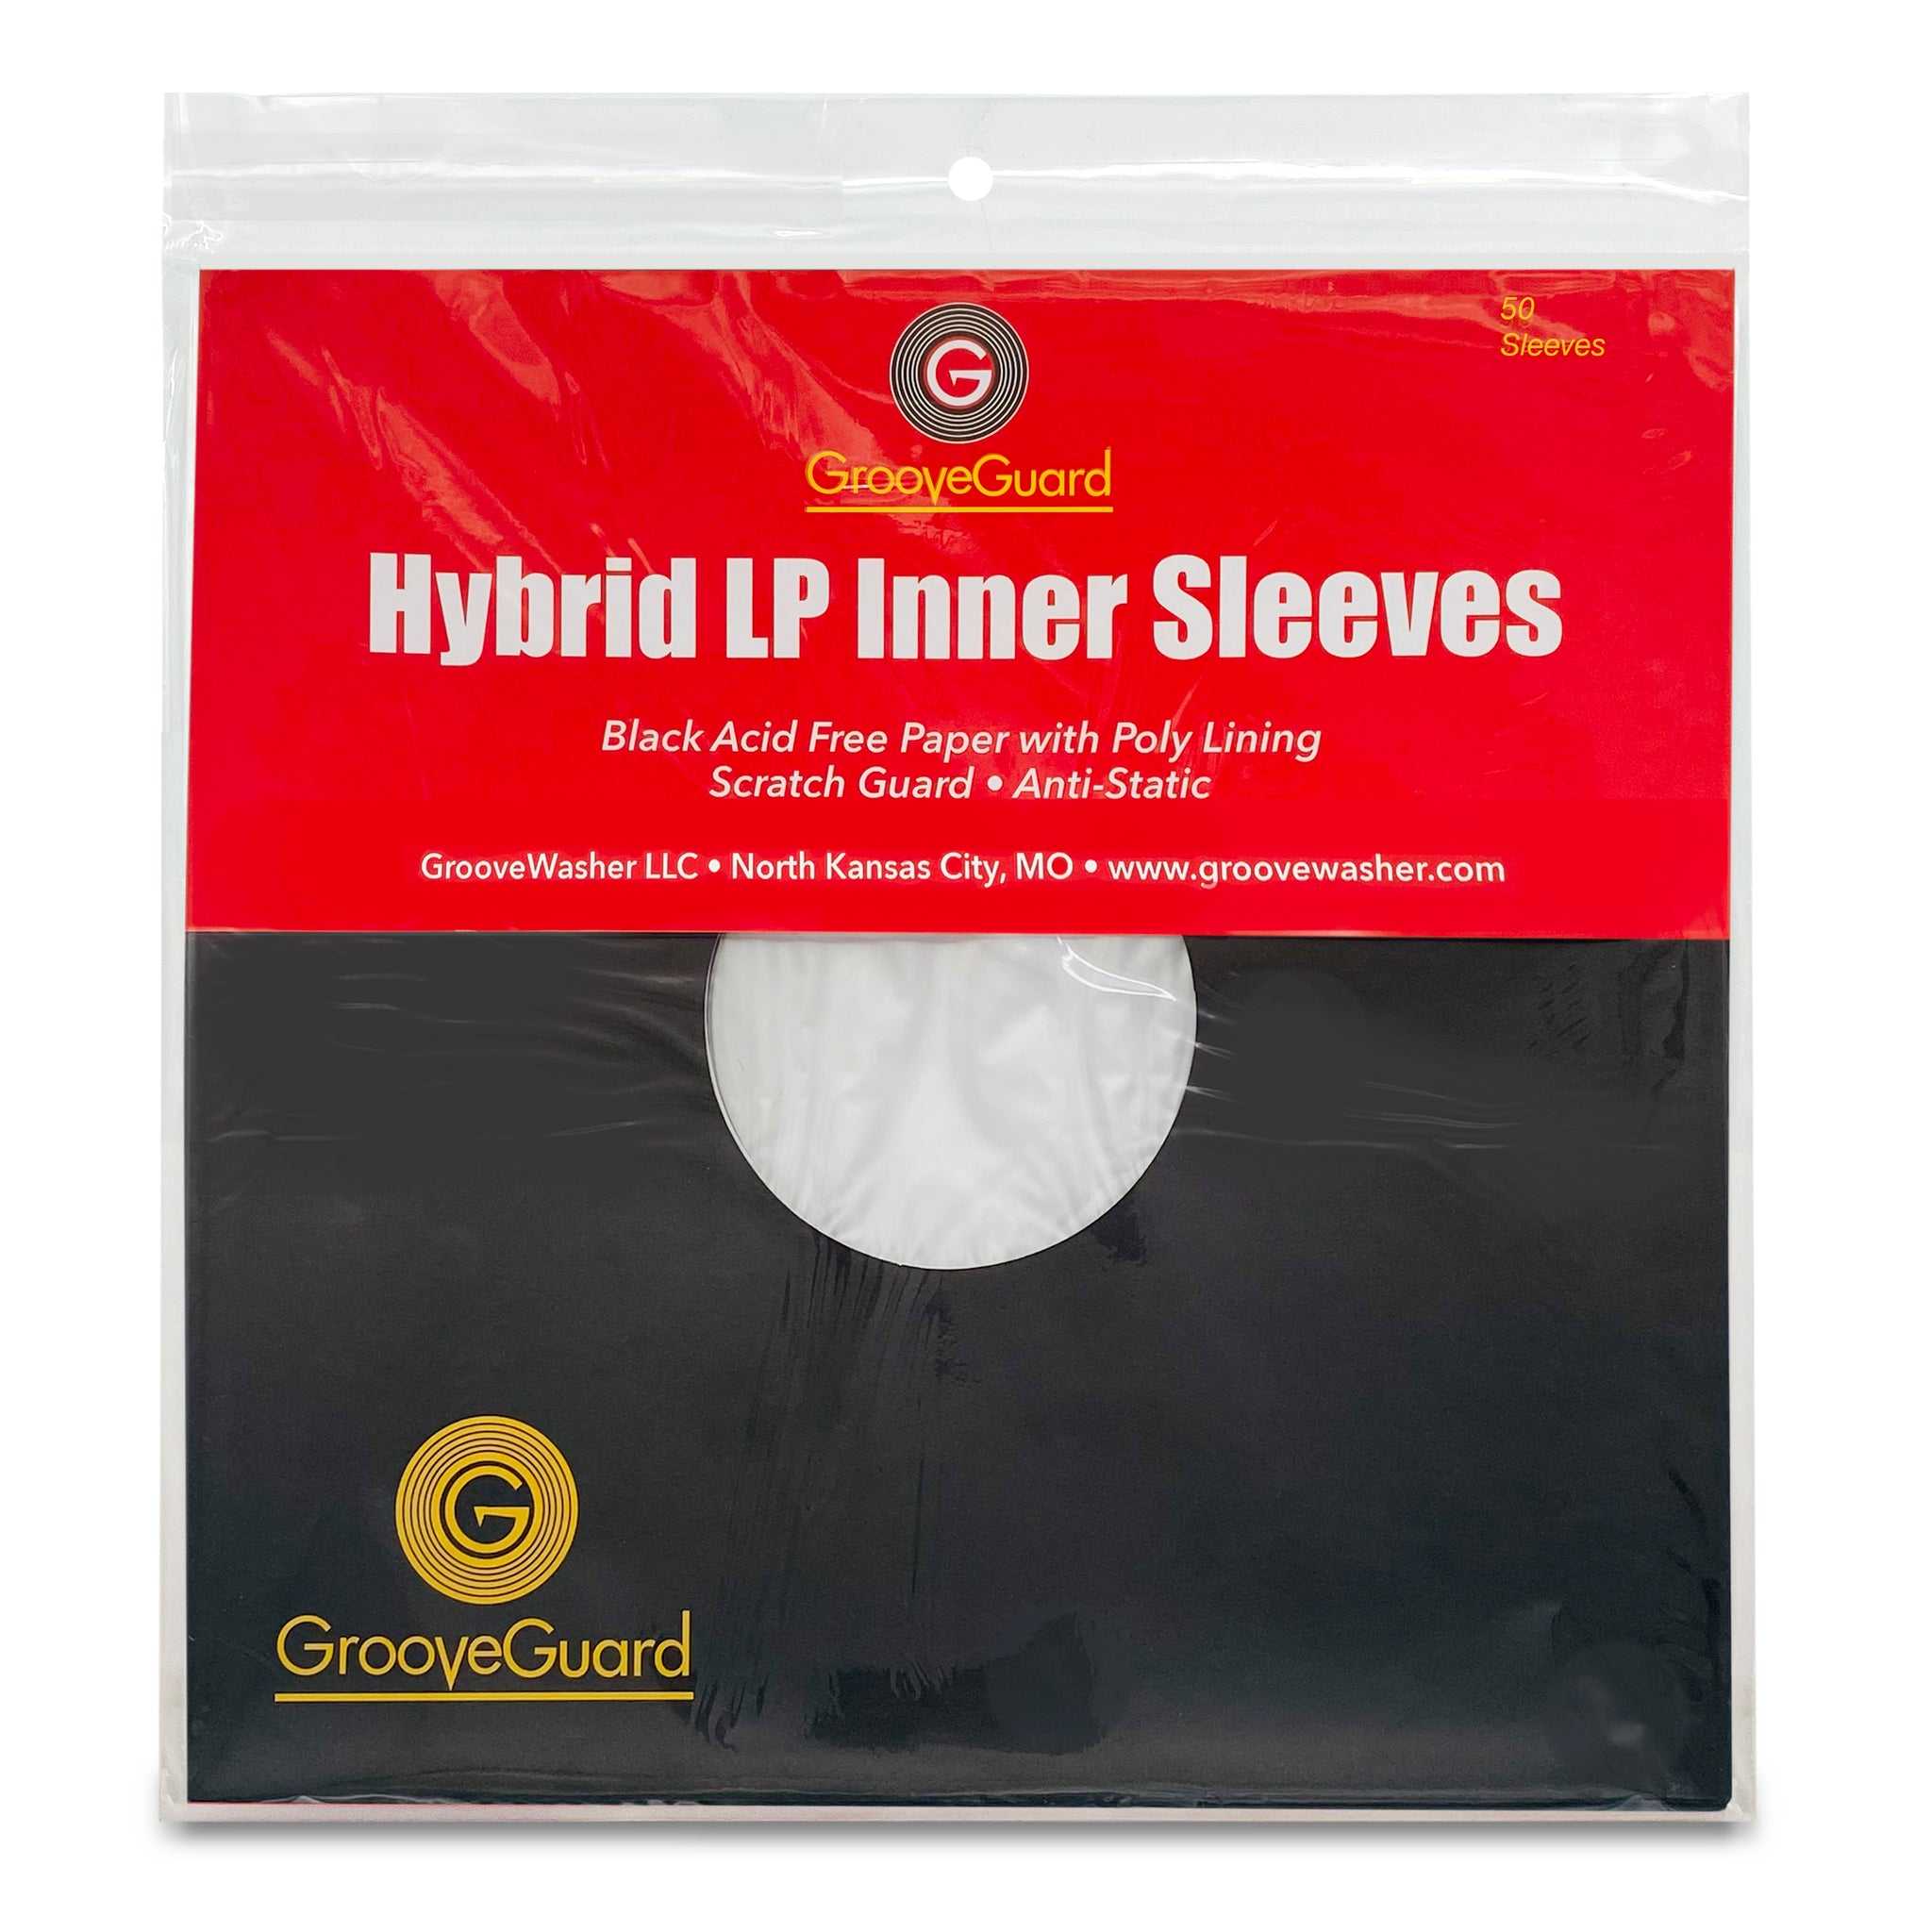 GrooveGuard: Hybrid LP Inner Sleeves (50)